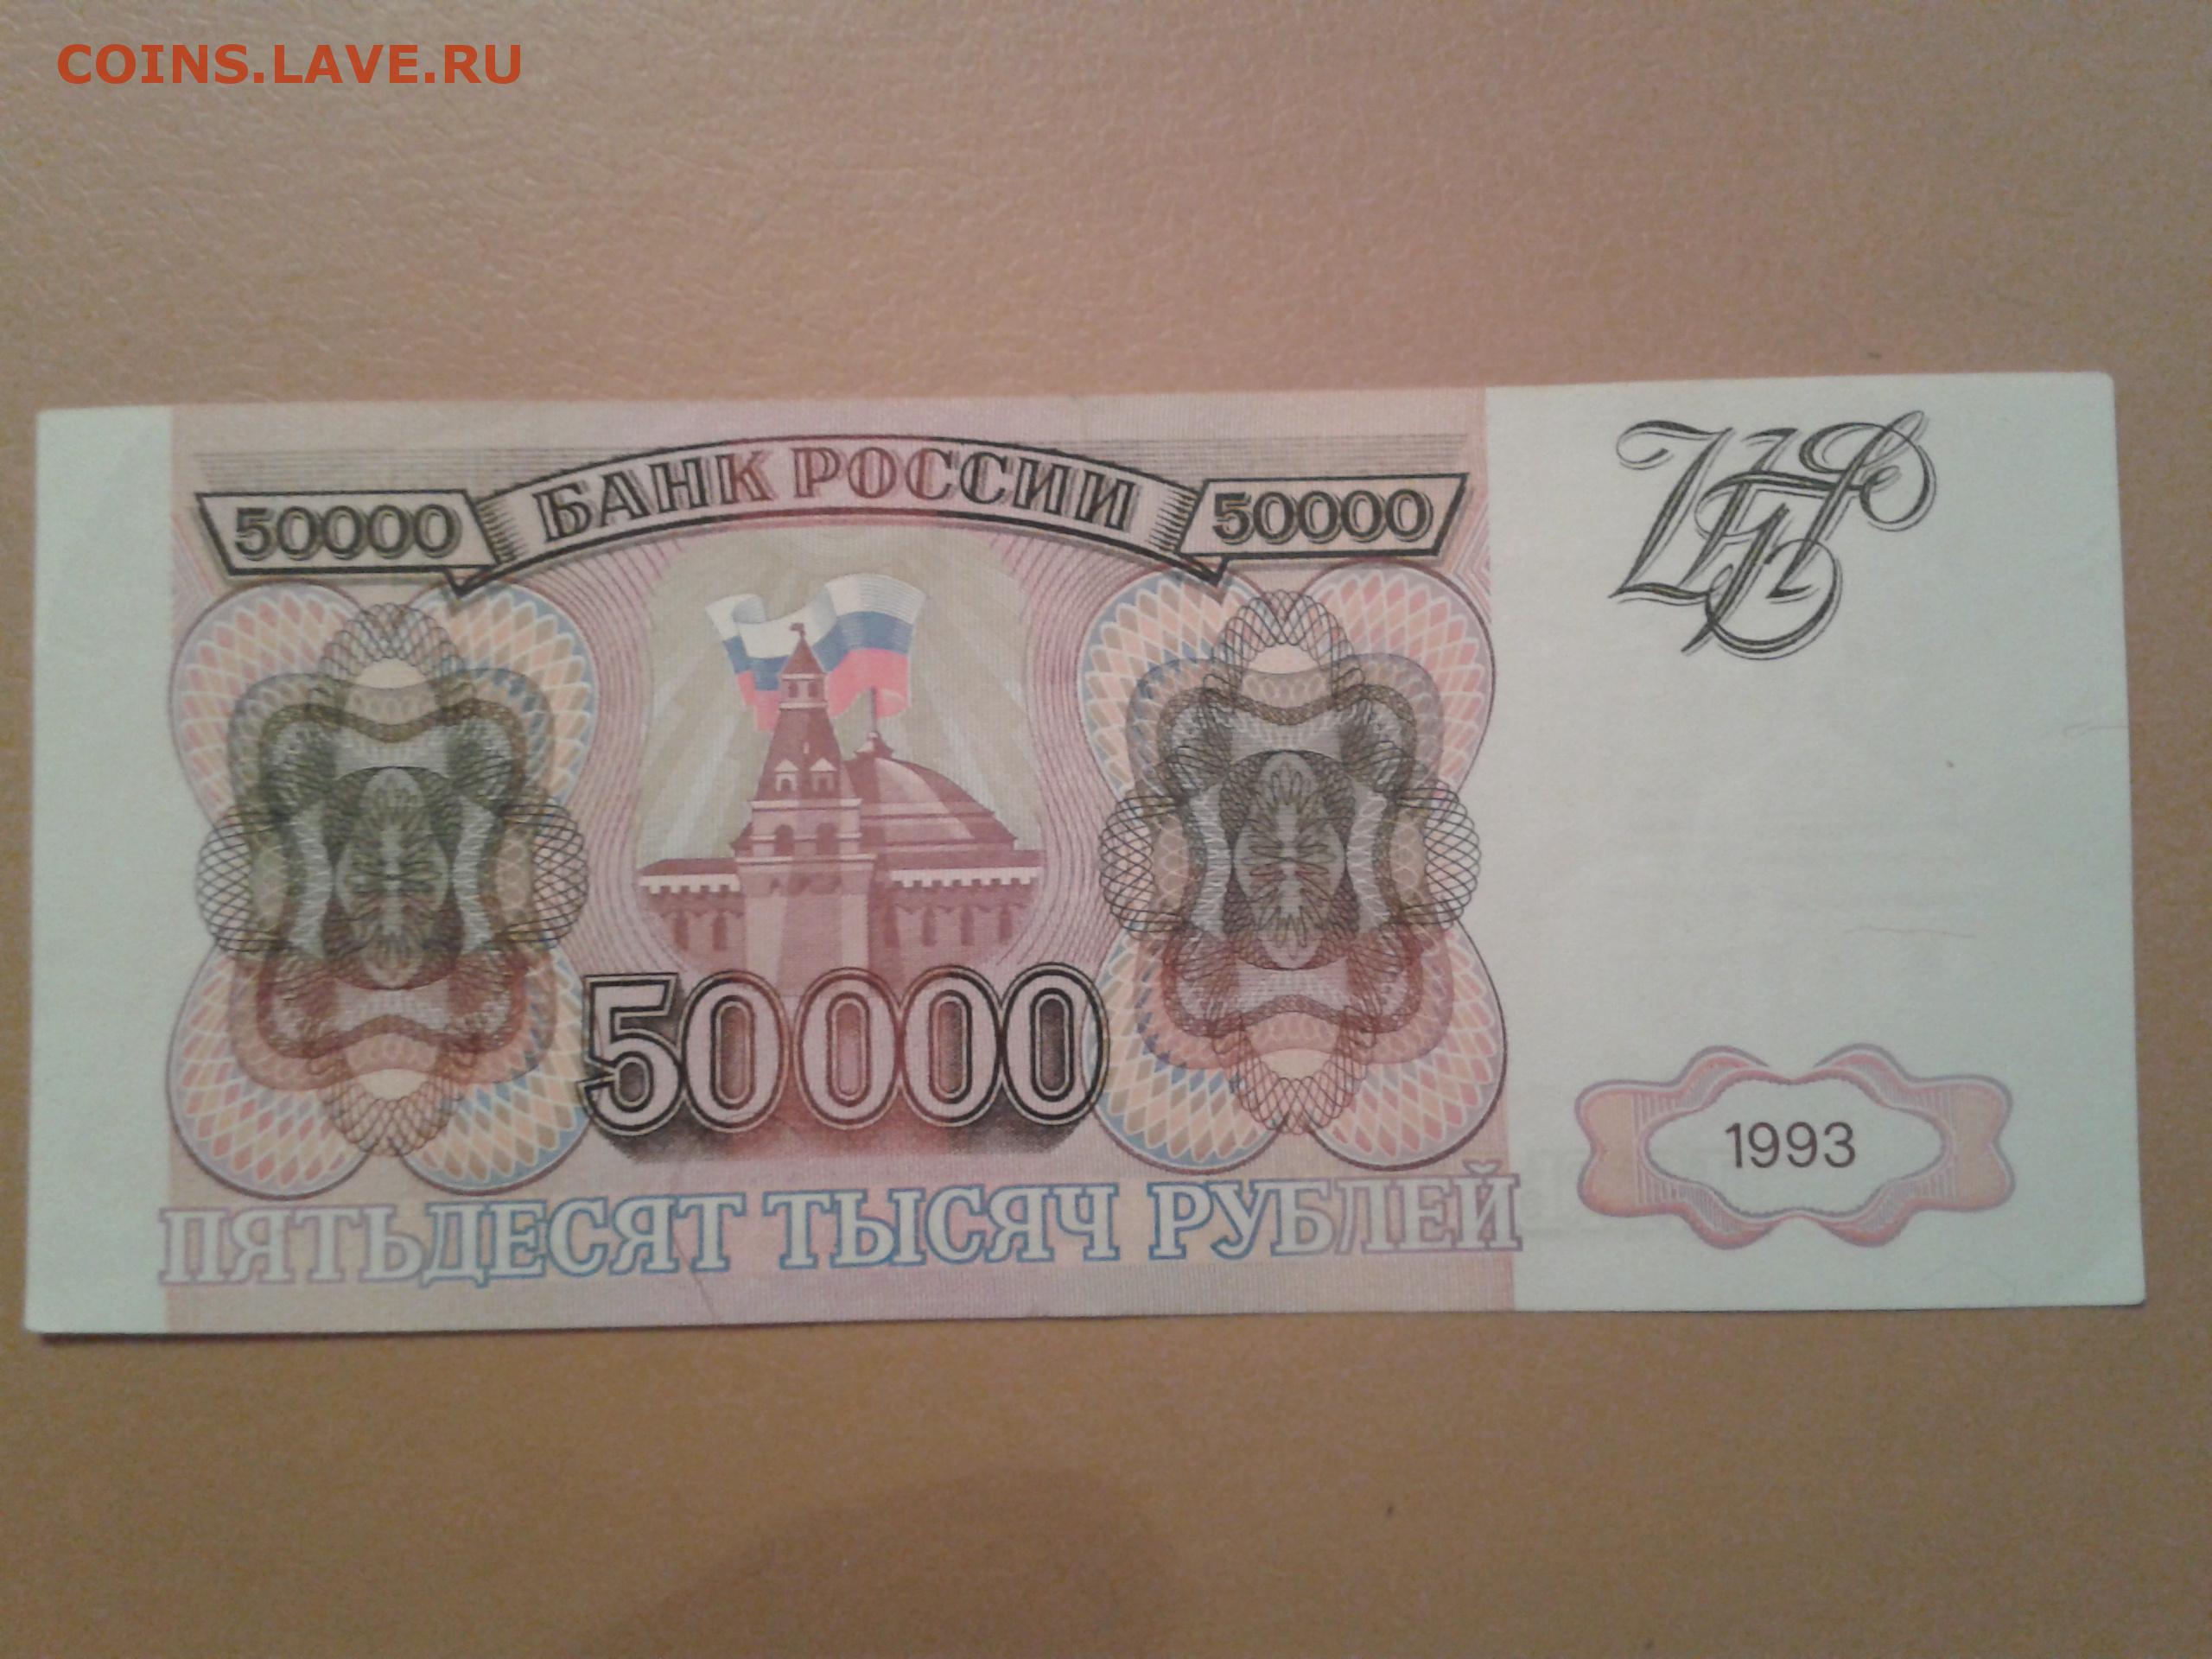 50000 рублей 1993. Купюра 50000 рублей 1993 года. Банкнота 50000 рублей 1993. Деньги 1993 года. Банкнота 50000 рублей 1993 года.